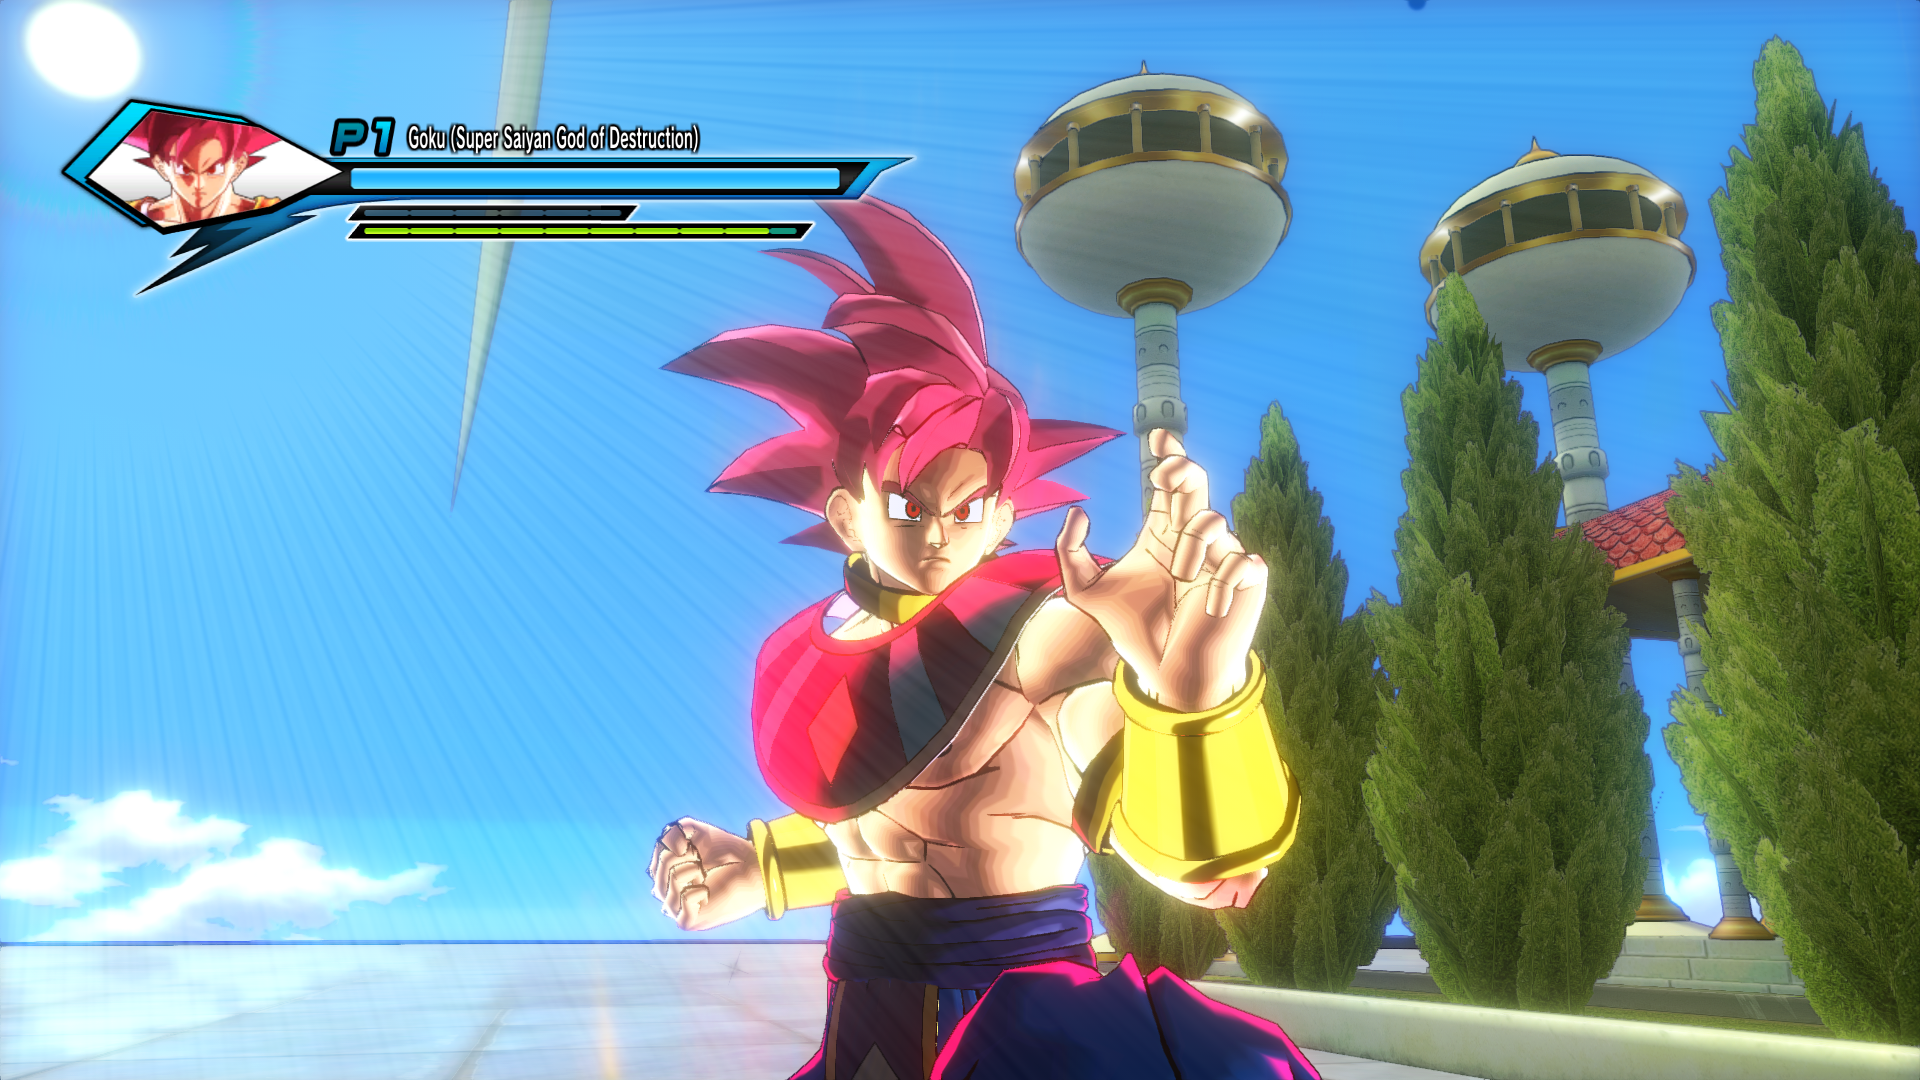 Goku super saiyan god of destruction